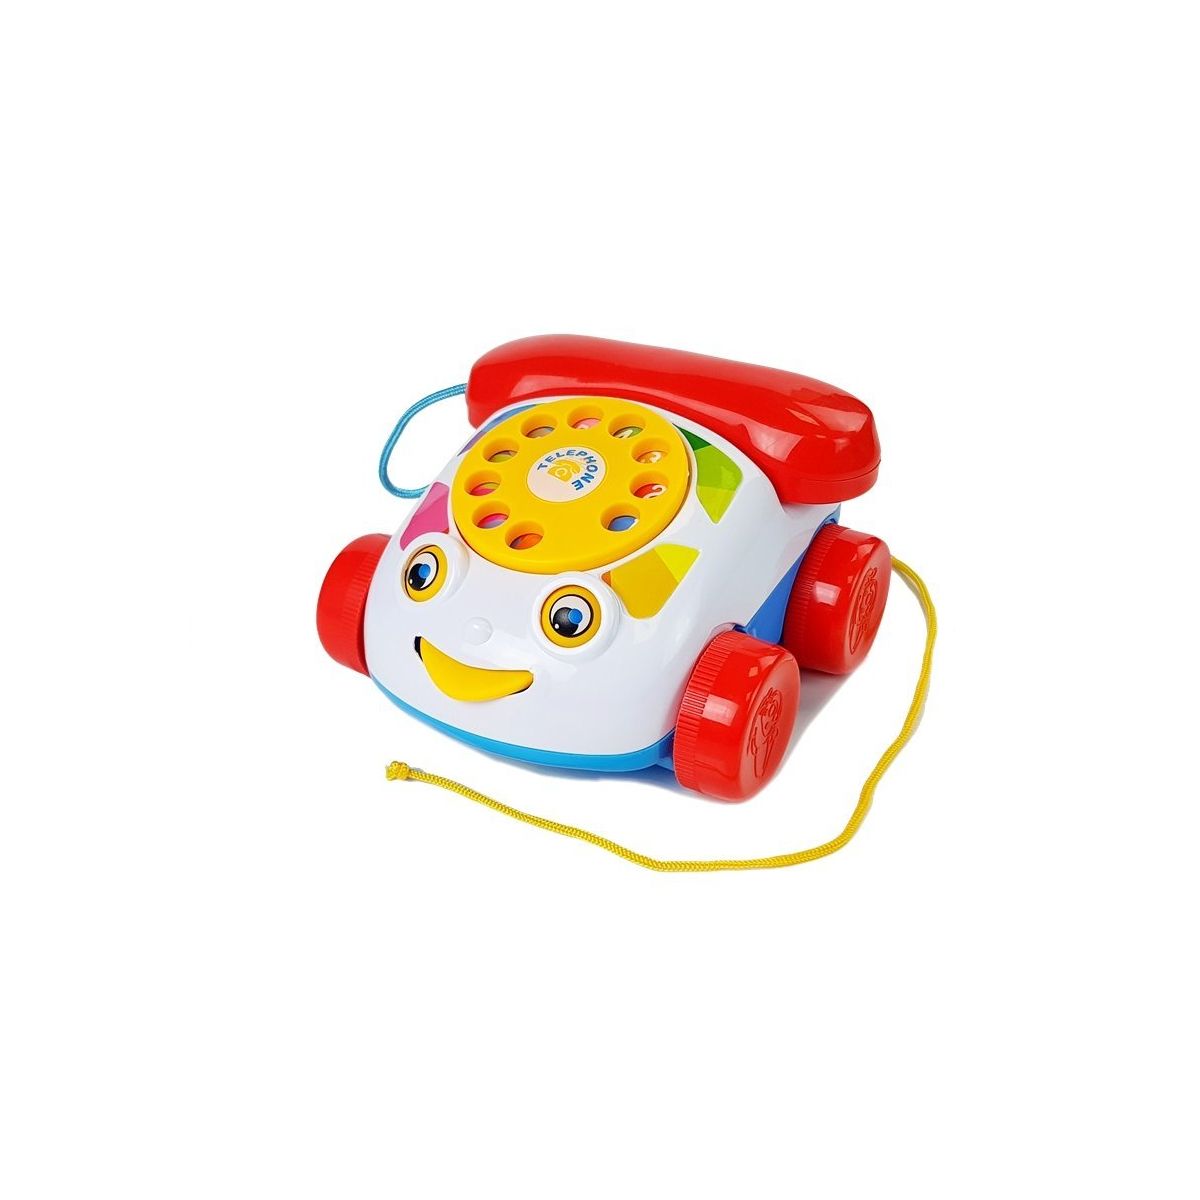 Telefon zabawkowy Do Ciągnięcia na Kółkach ze słuchawka na Baterie dla Niemowlęcia Lean (6889)